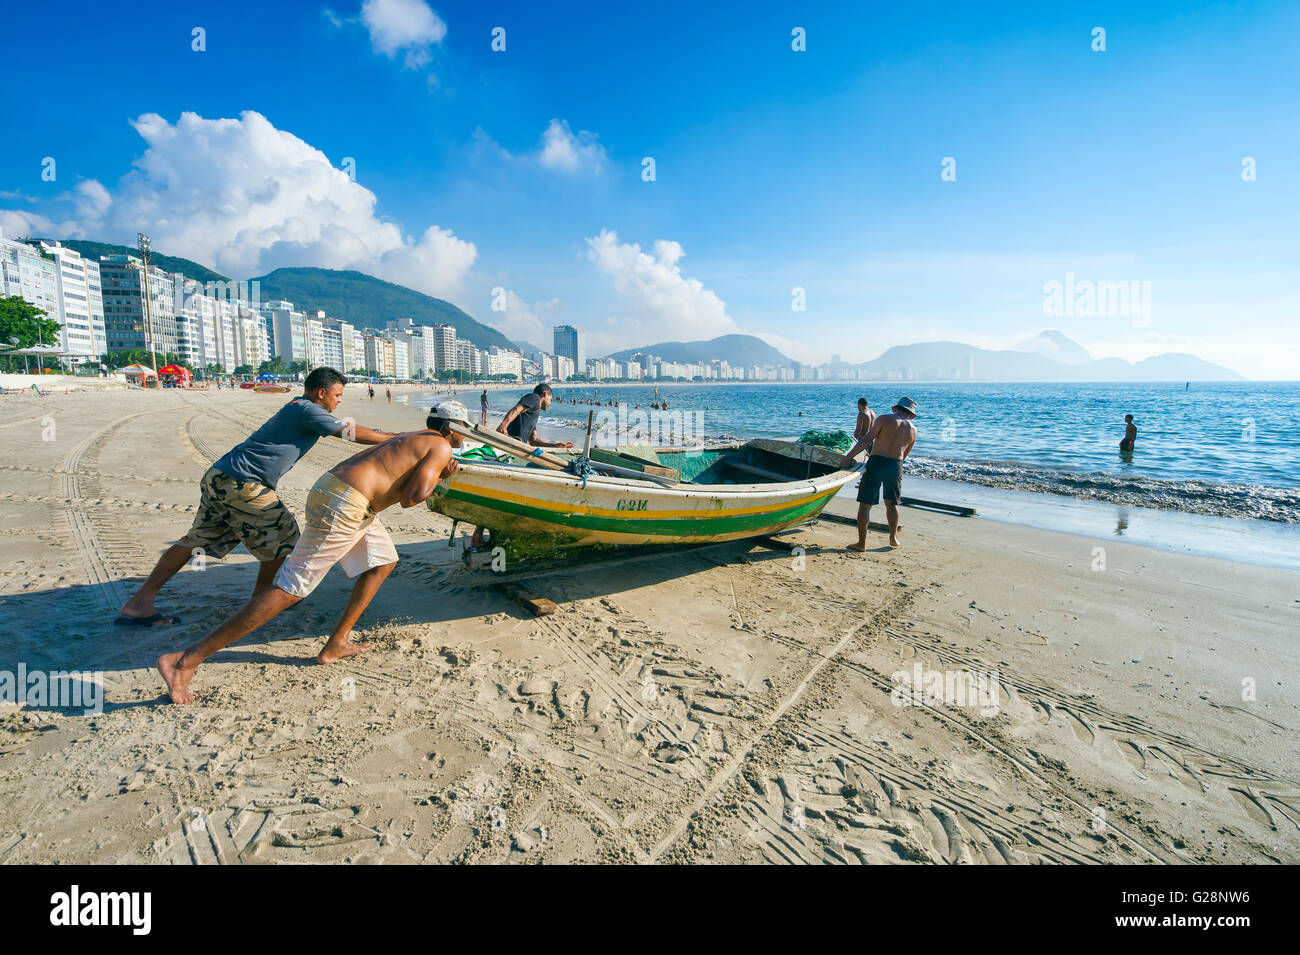 RIO DE JANEIRO - APRIL 4, 2016: Brazilian fishermen launch a fishing ...